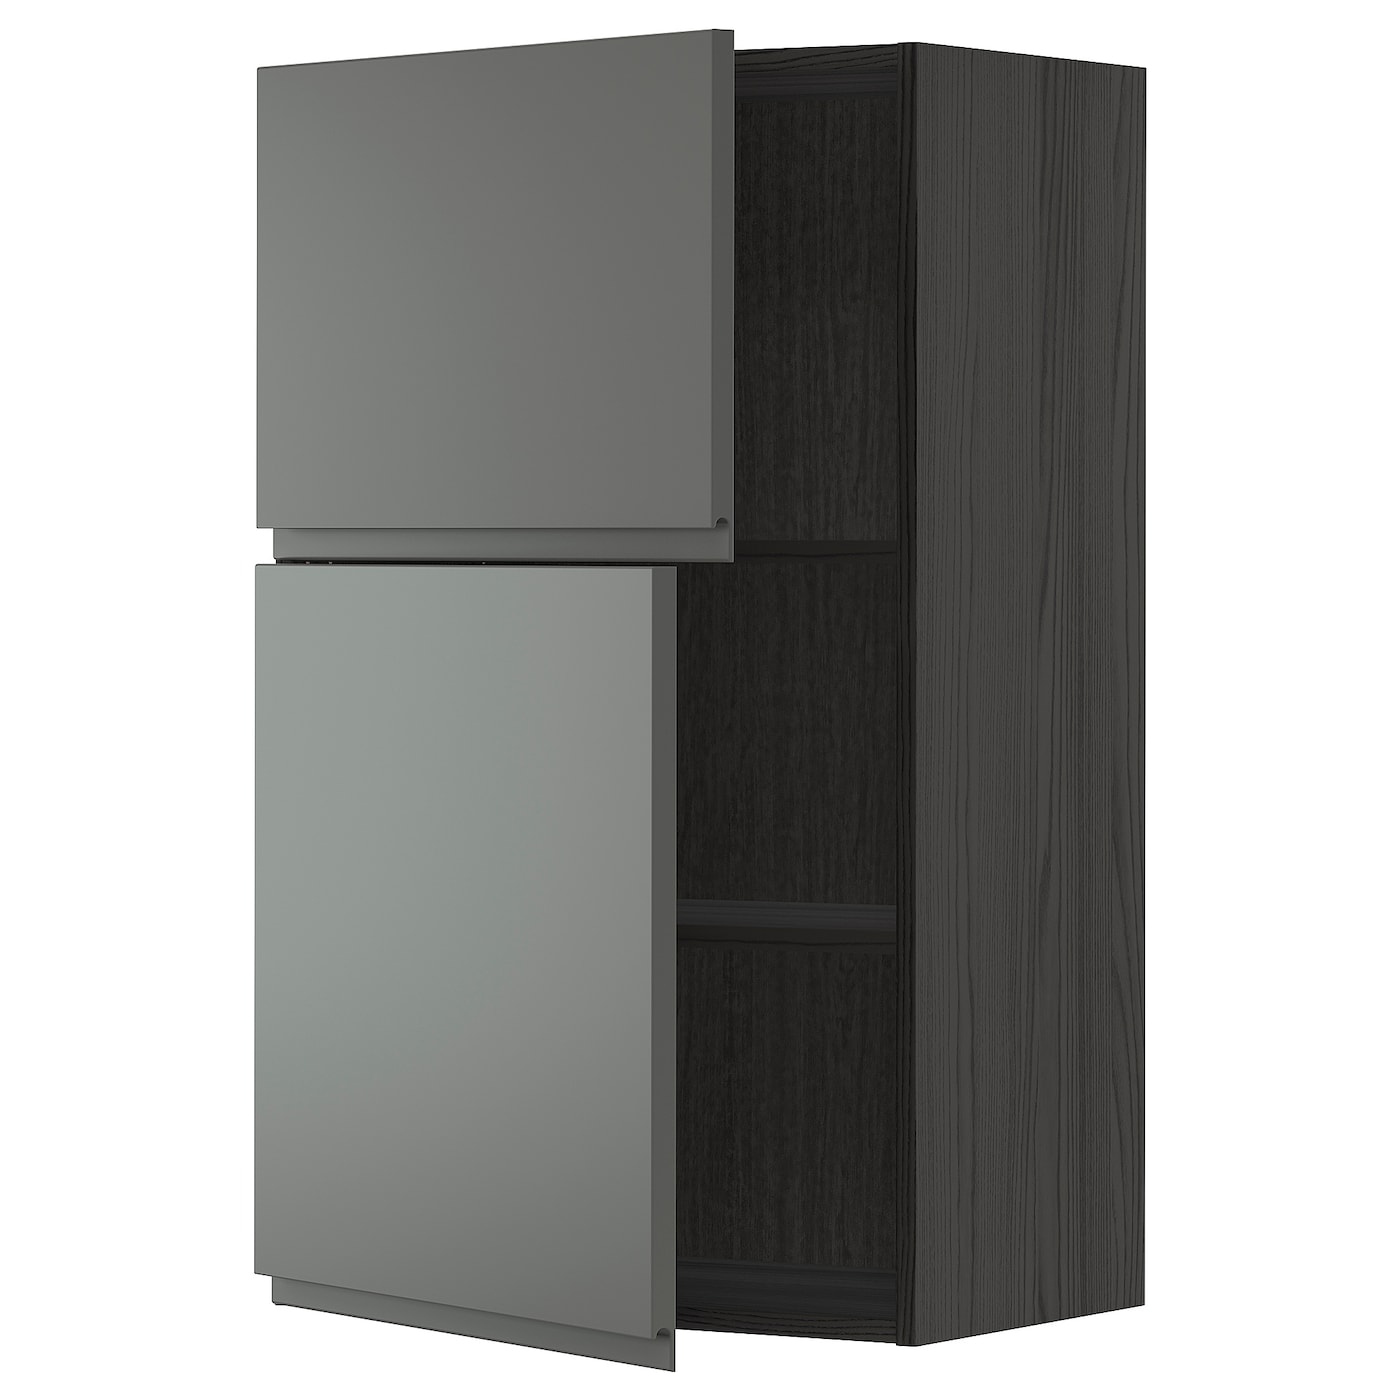 Навесной шкаф с полкой - METOD IKEA/ МЕТОД ИКЕА, 100х60 см,  черный/темно-серый